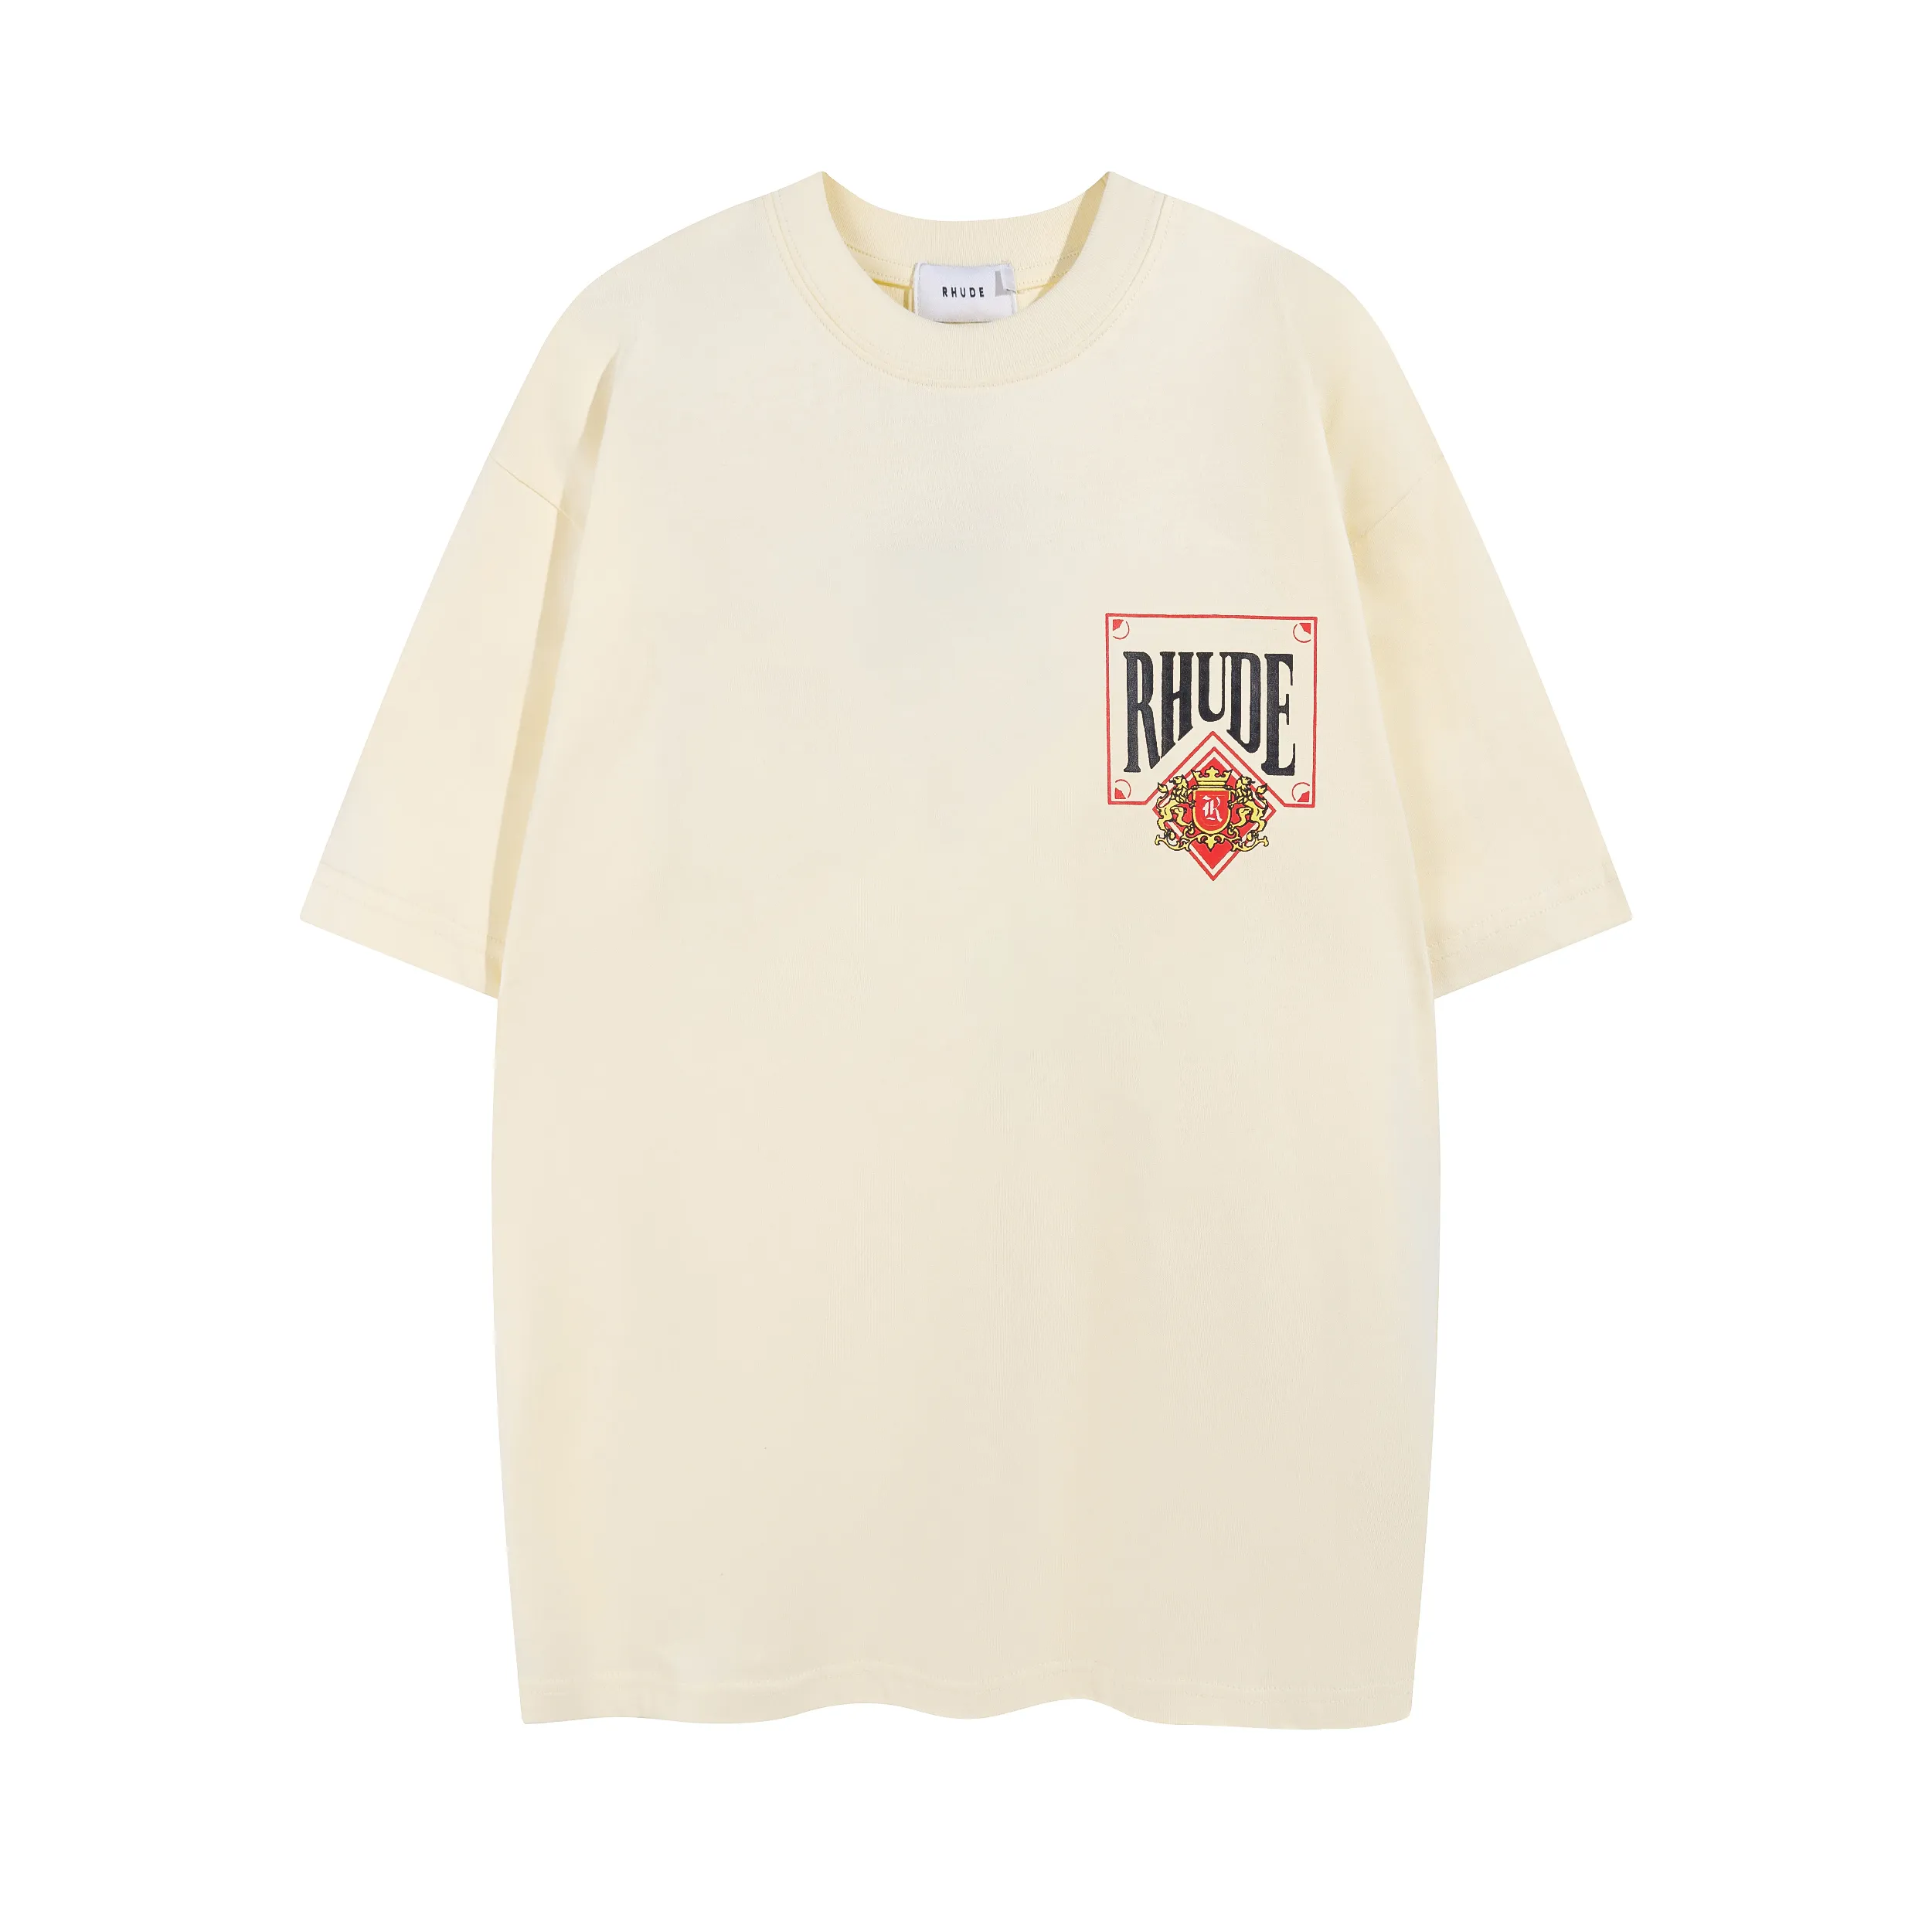 新しいRhude Mens and Women TシャツレタープリントグラフィックティーカジュアルコットンTシャツデザイナートップ半袖ヒップホップストリートウェアS-XL